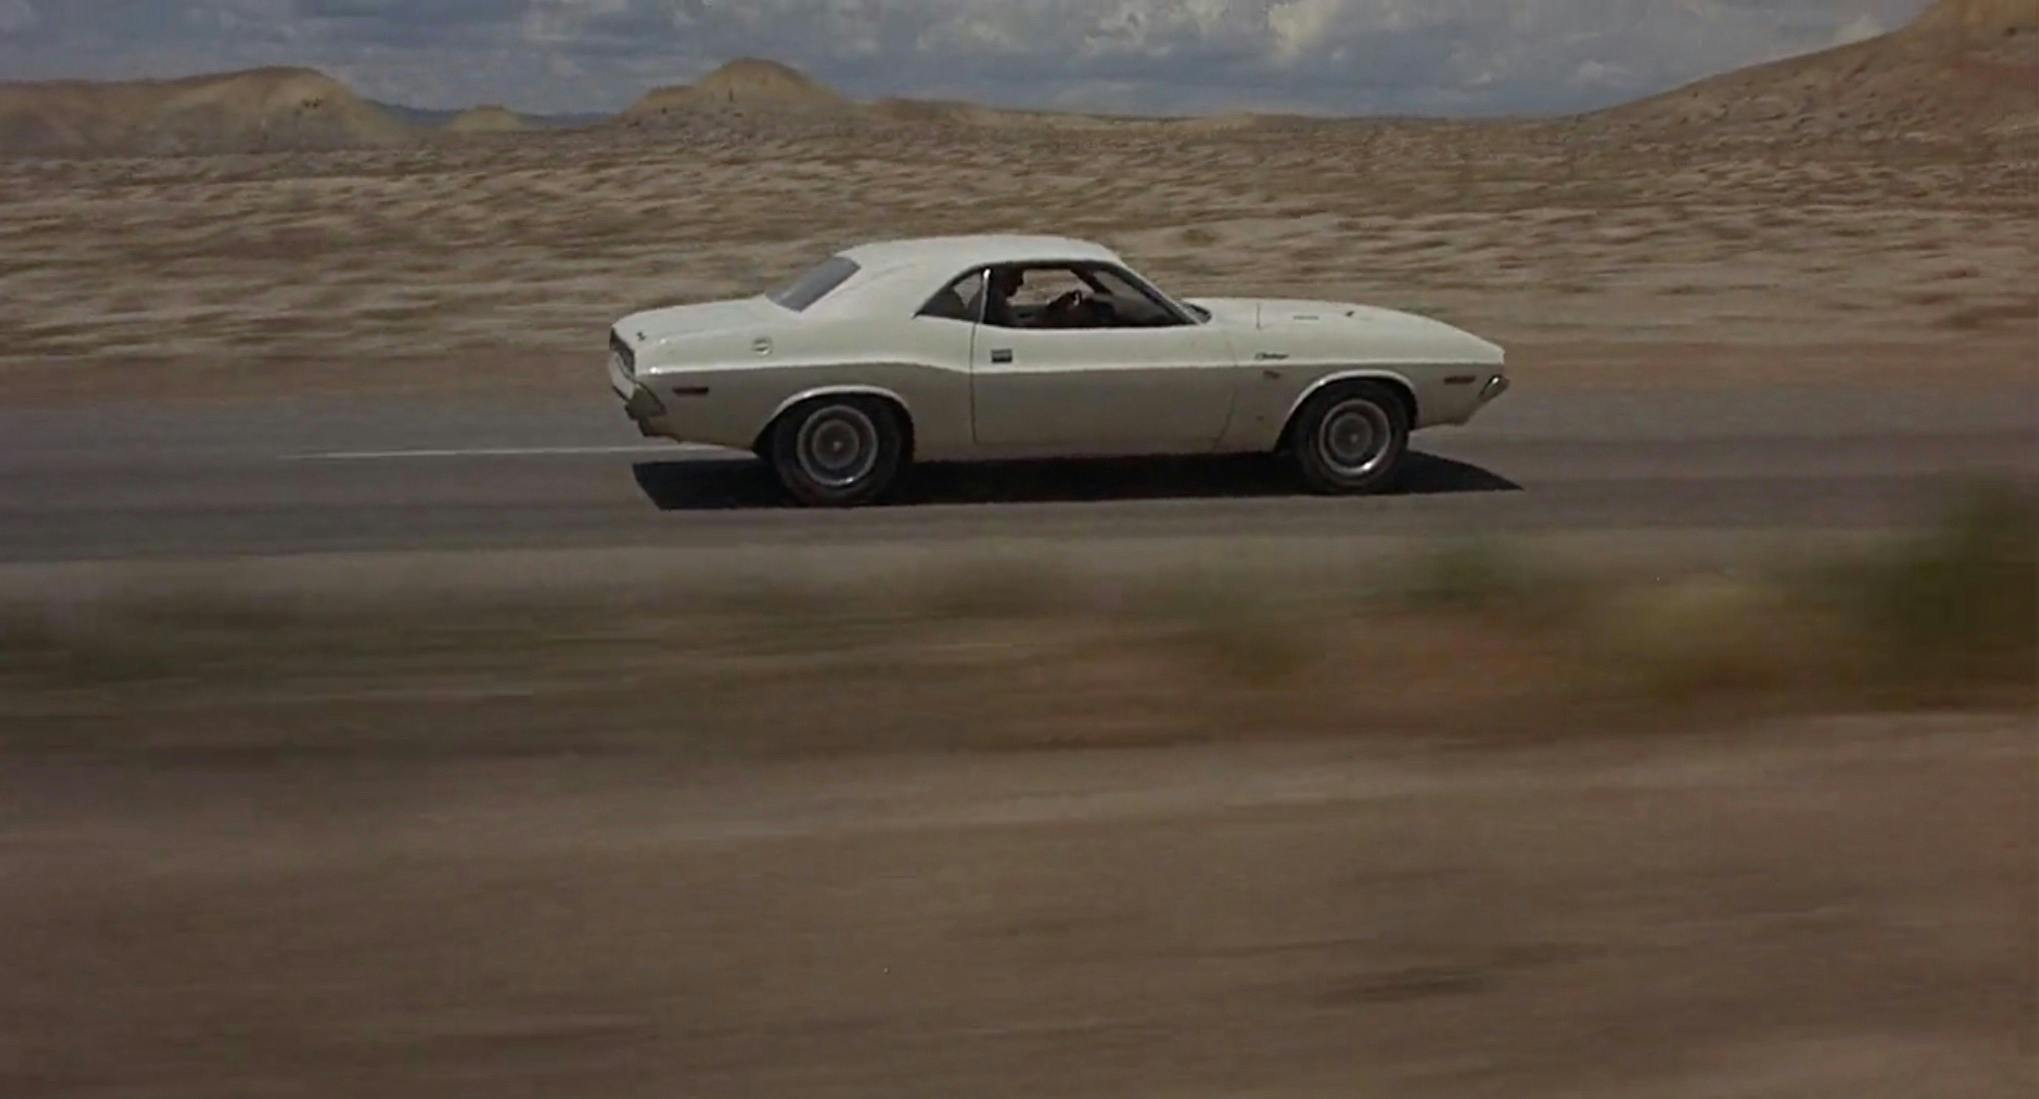 1970 Dodge Challenger R/T 440 Magnum side profile desert highway action